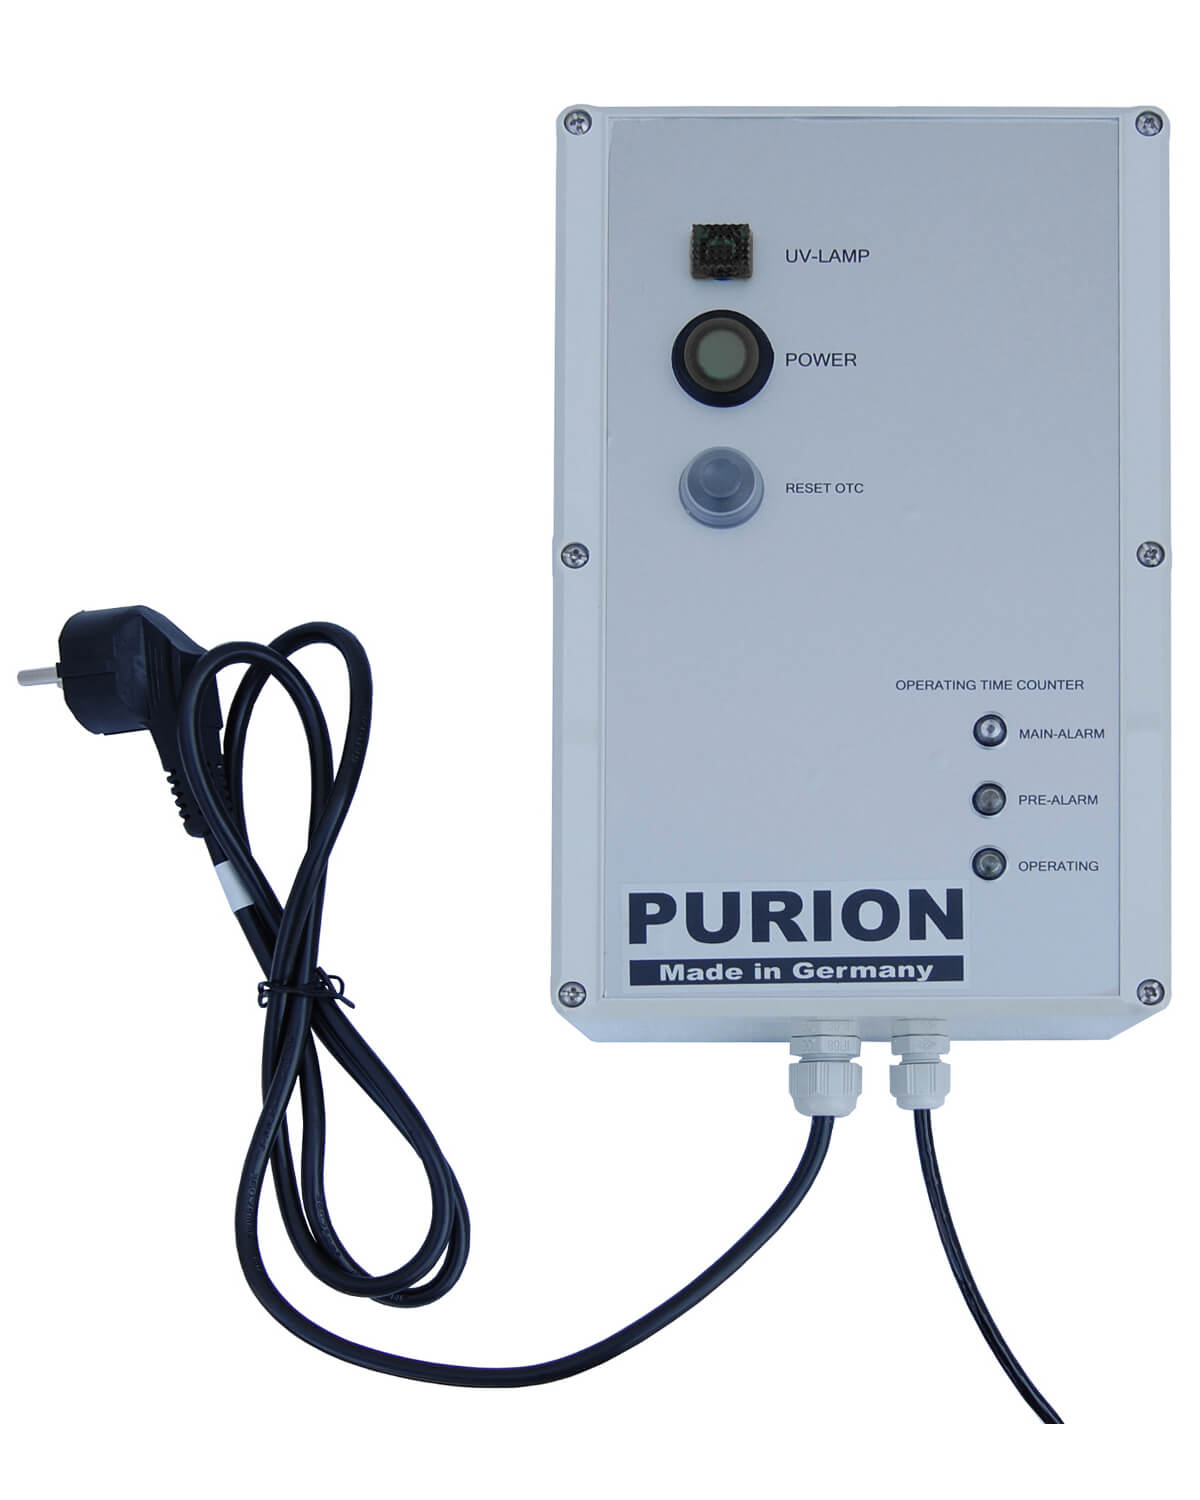 Die PURION 1000 H OTC von PURION GmbH bietet stromsparendes und wartungsfreies UV-C-Desinfektionssystem. Sie ermöglicht die Integration in sein Warmwasser